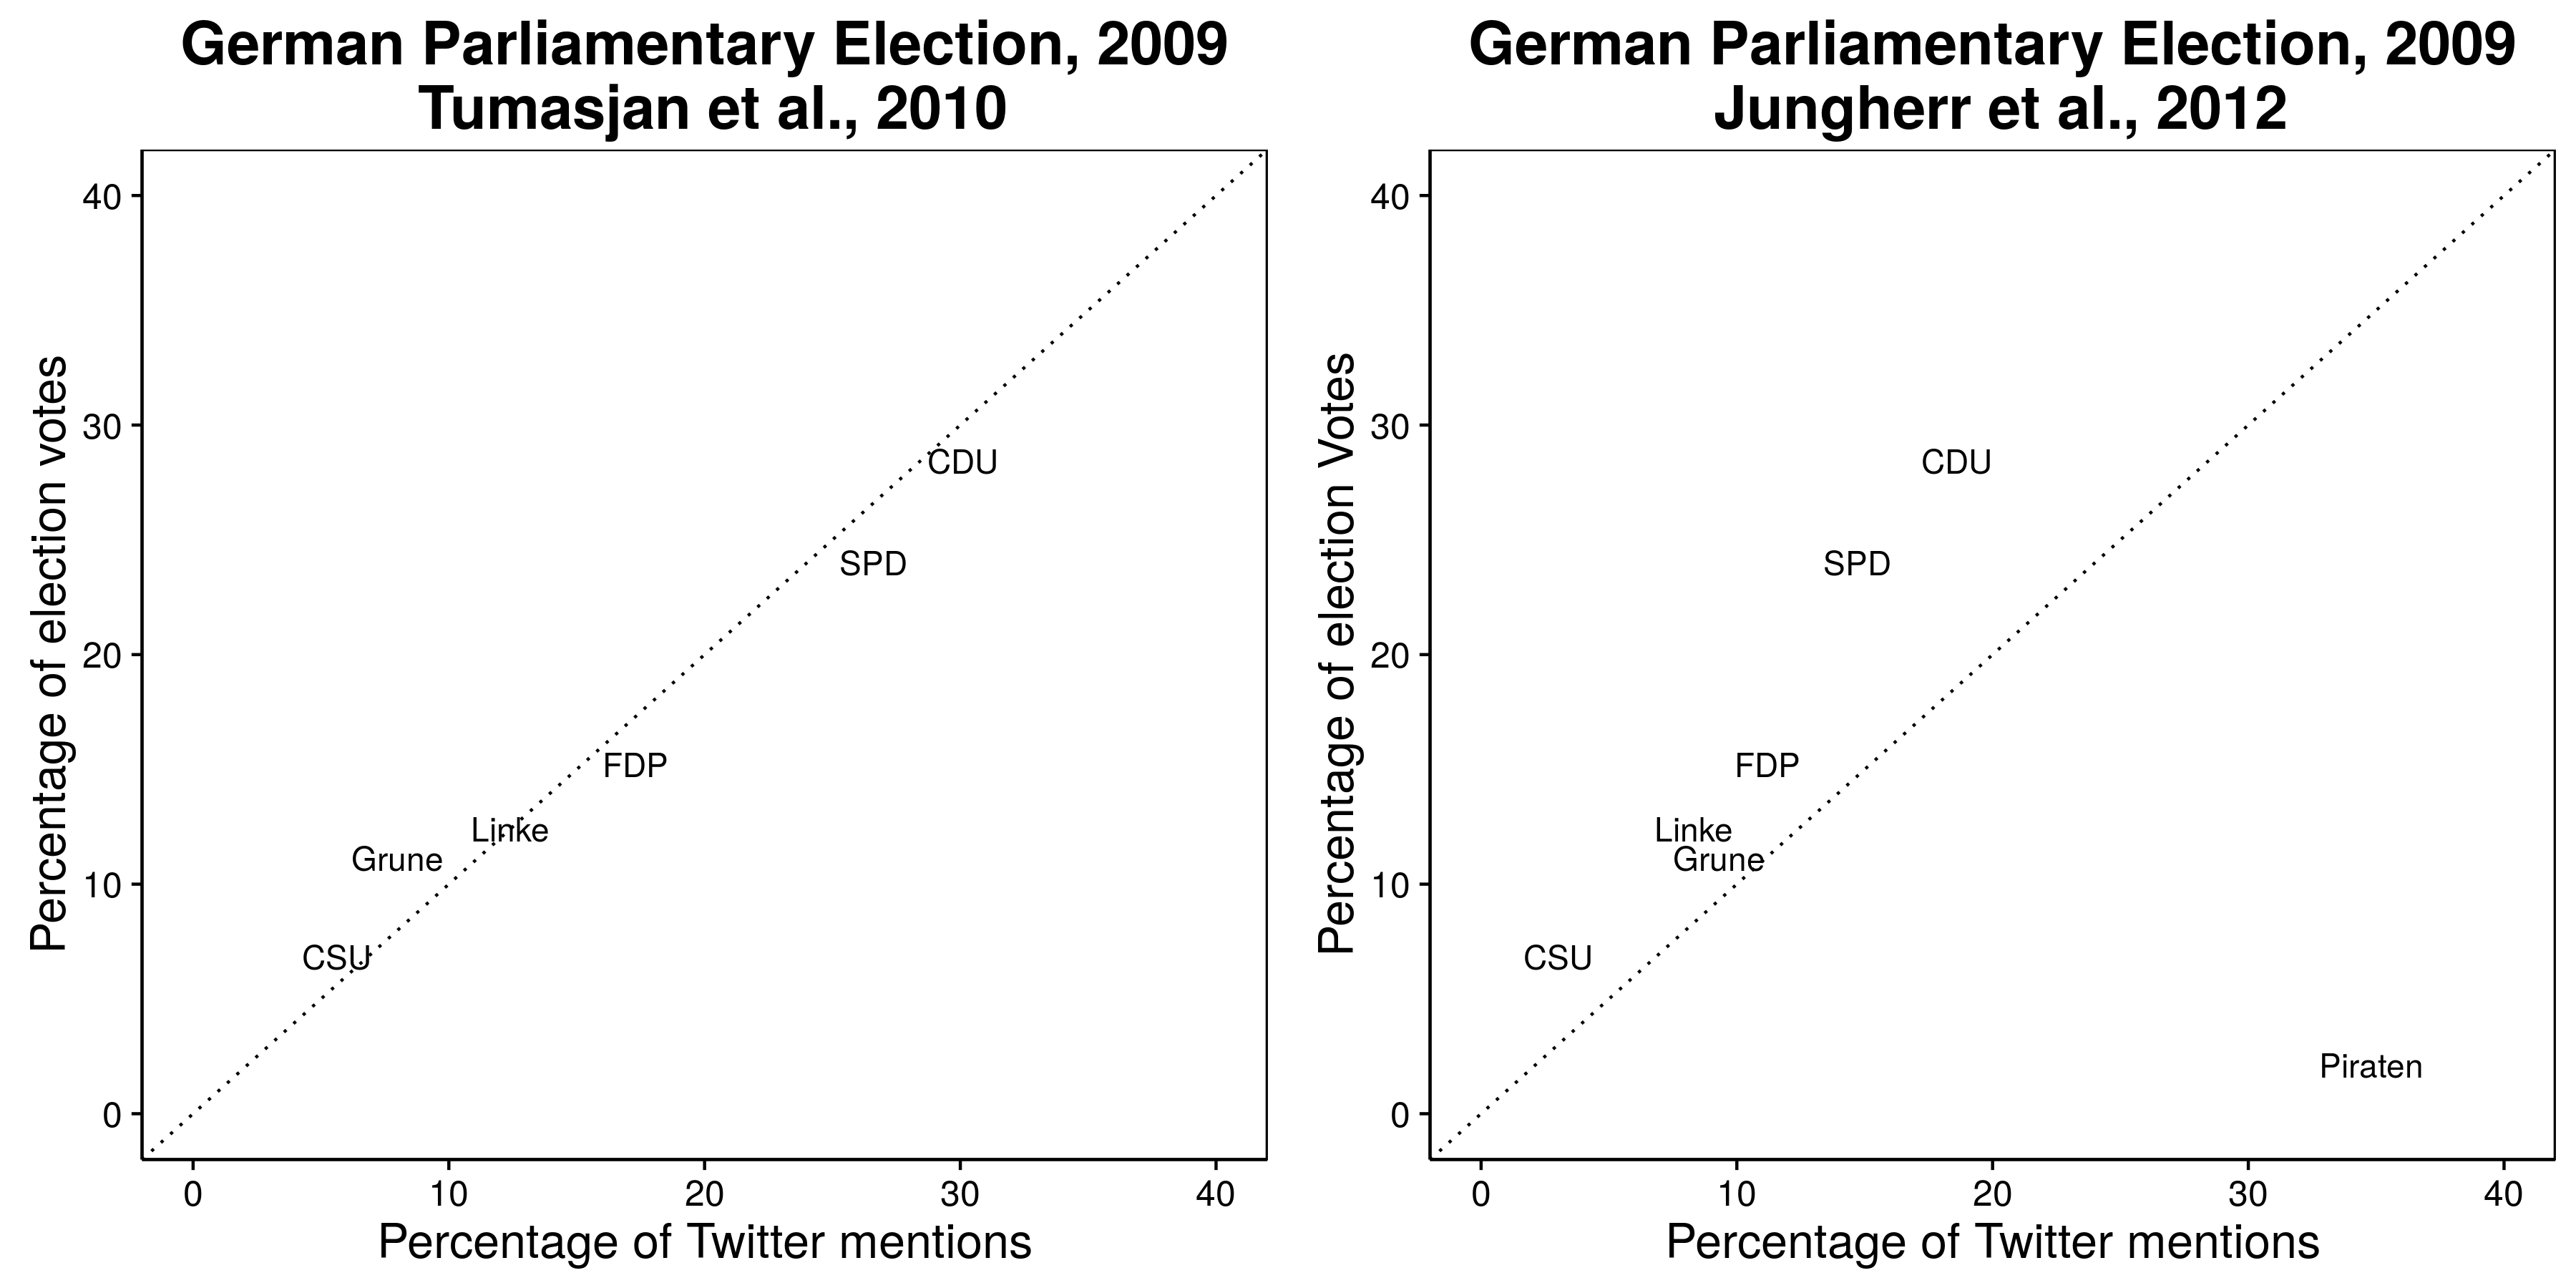 Figure 2.3: Les mentions sur Twitter semblent prédire les résultats de l'élection allemande de 2009 (Tumasjan et al., 2010), mais cela exclut le parti ayant le plus de mentions: Parti Pirate (Jungherr, Jürgens et Schoen 2012). Voir Tumasjan et al. (2012) pour un argument en faveur de l'exclusion du Parti Pirate. Adapté de Tumasjan et al. (2010), tableau 4 et Jungherr, Jürgens et Schoen (2012), tableau 2.